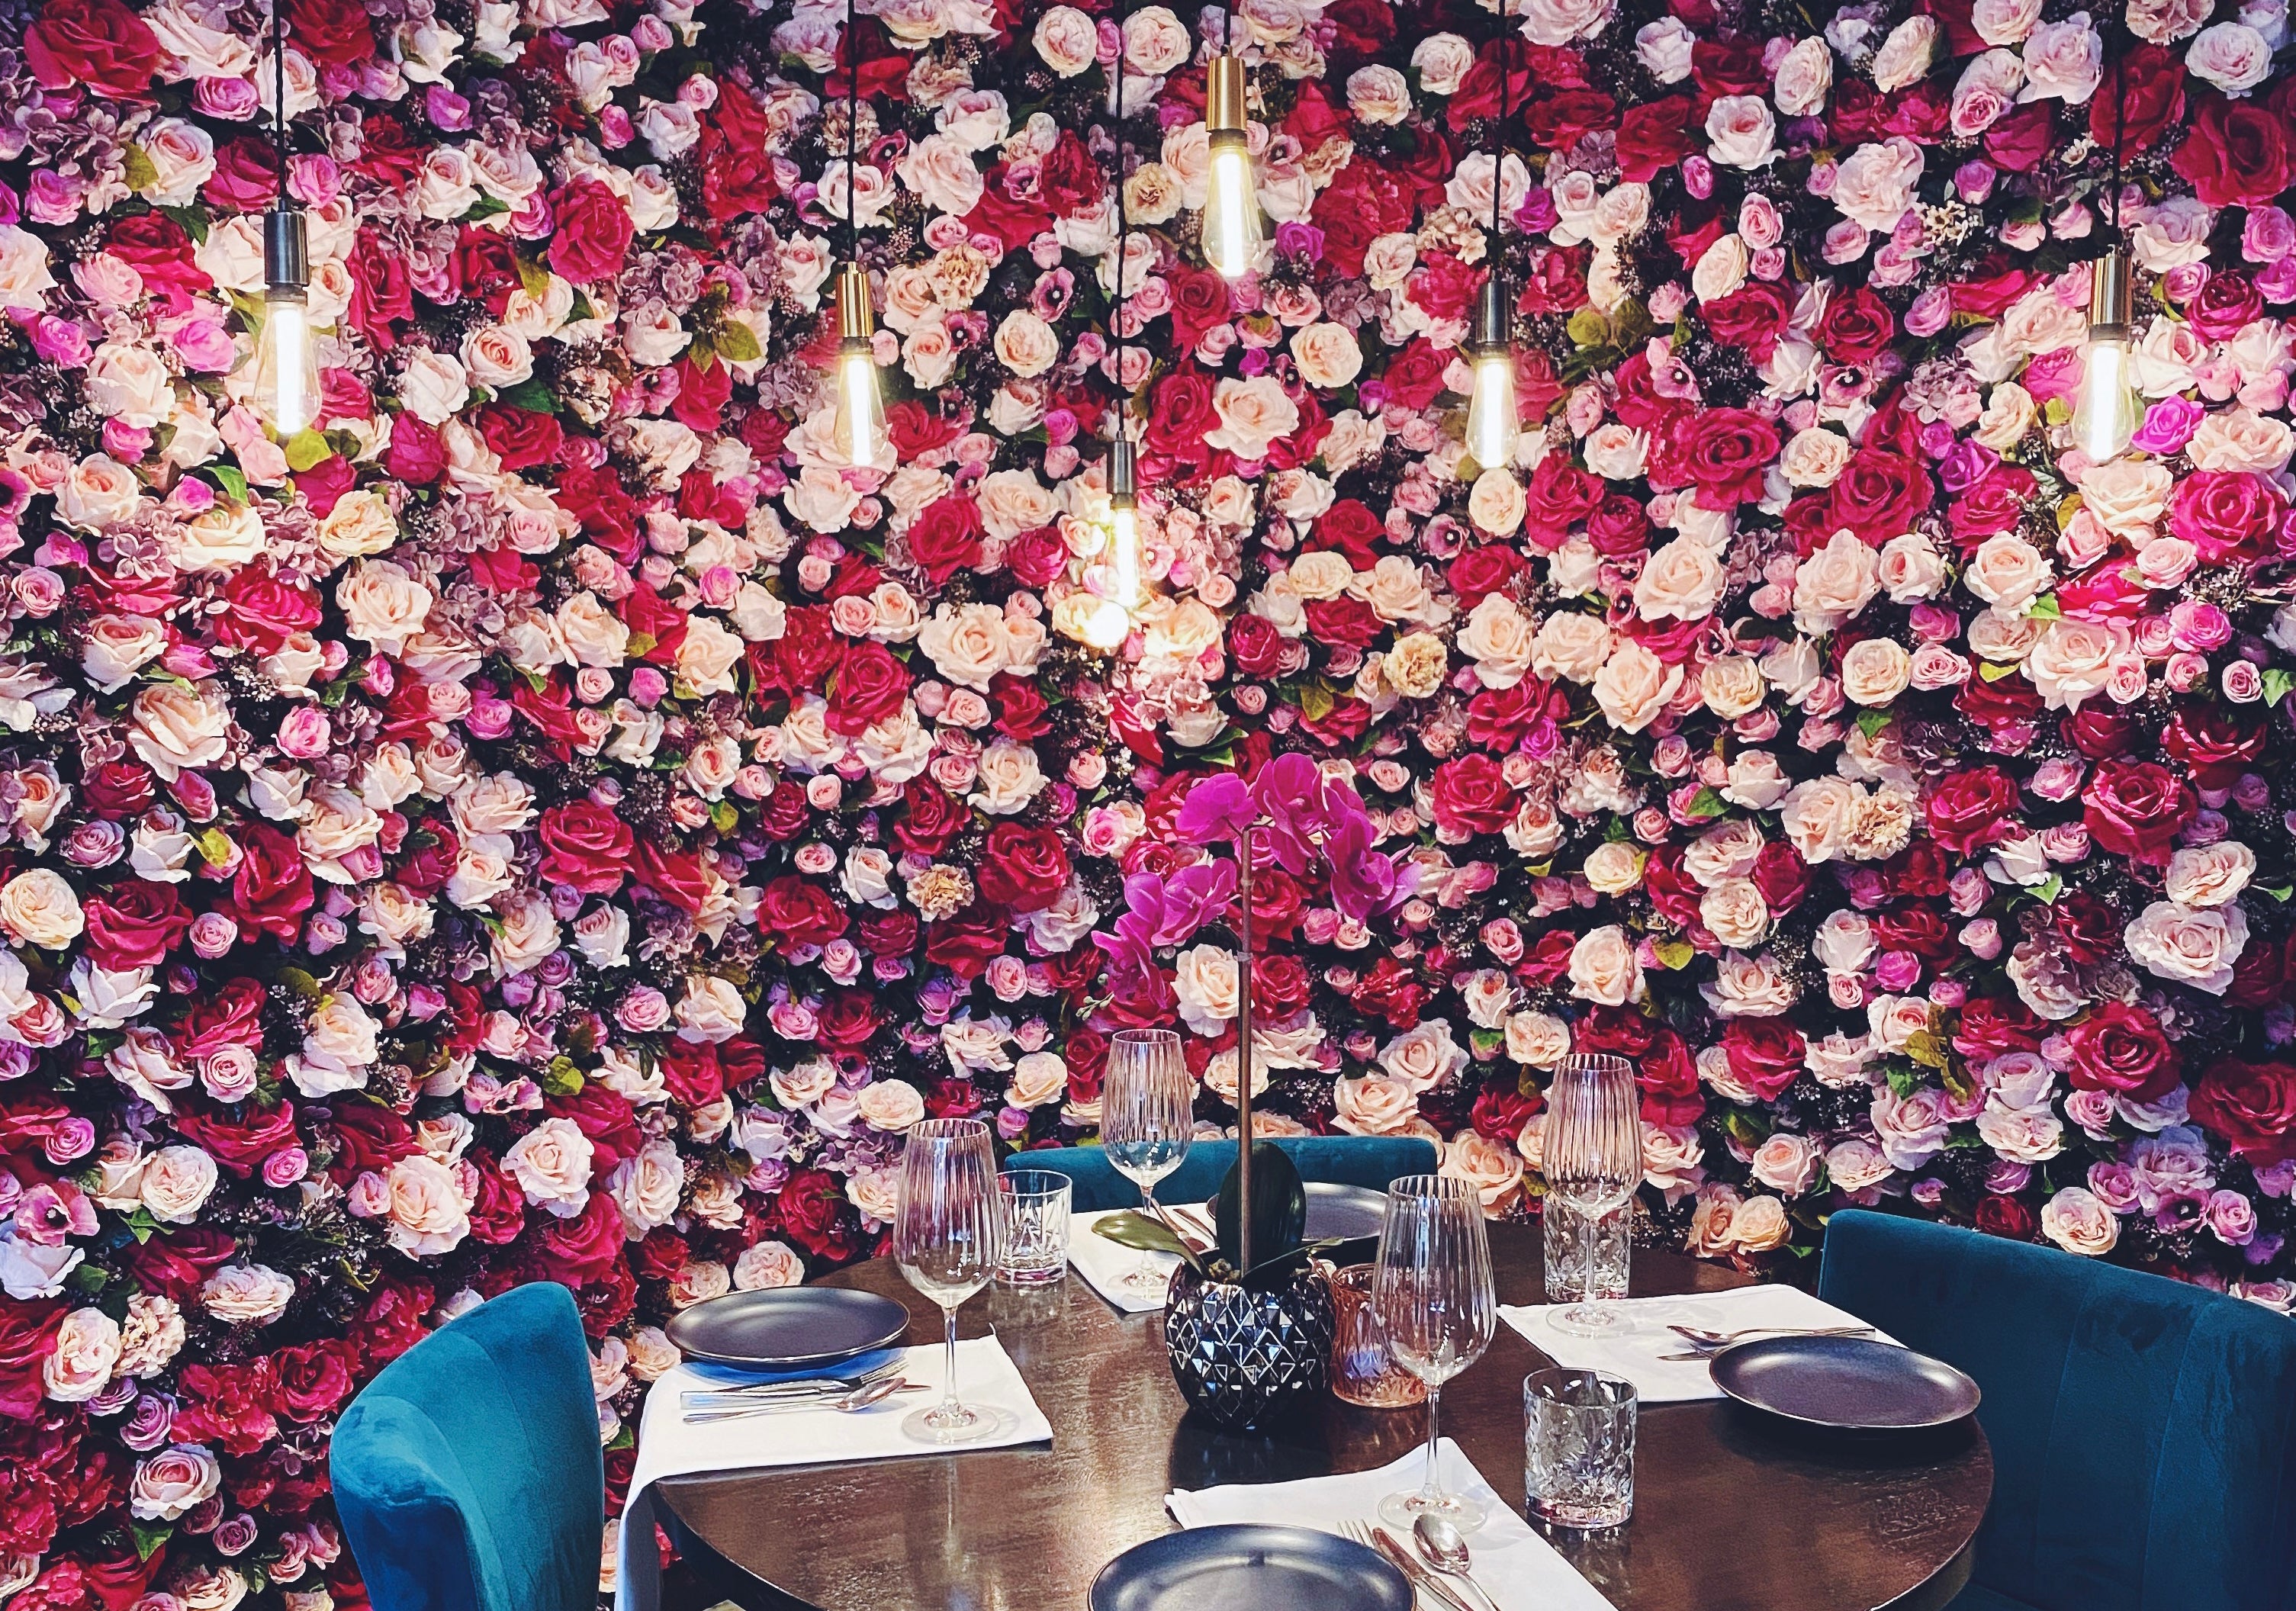 Restaurant Flower Installation